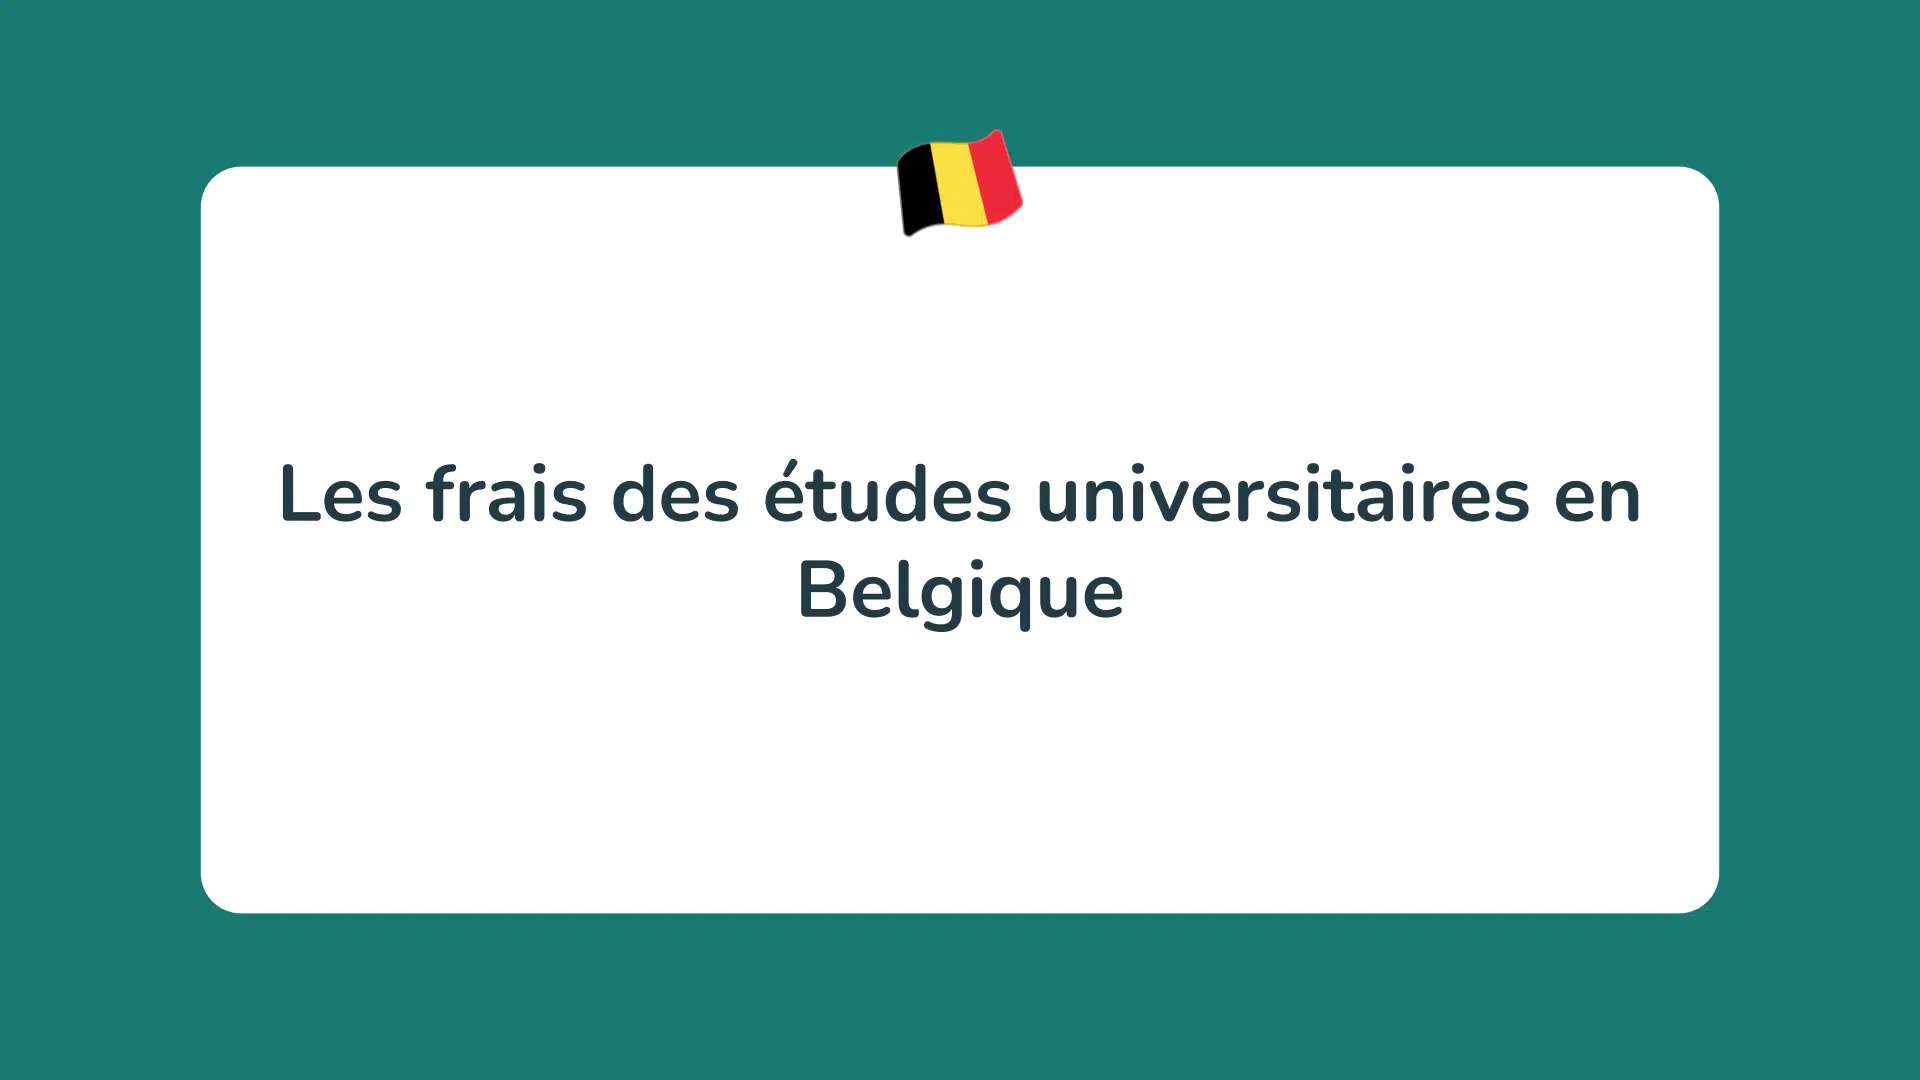 Les frais des études universitaires en Belgique